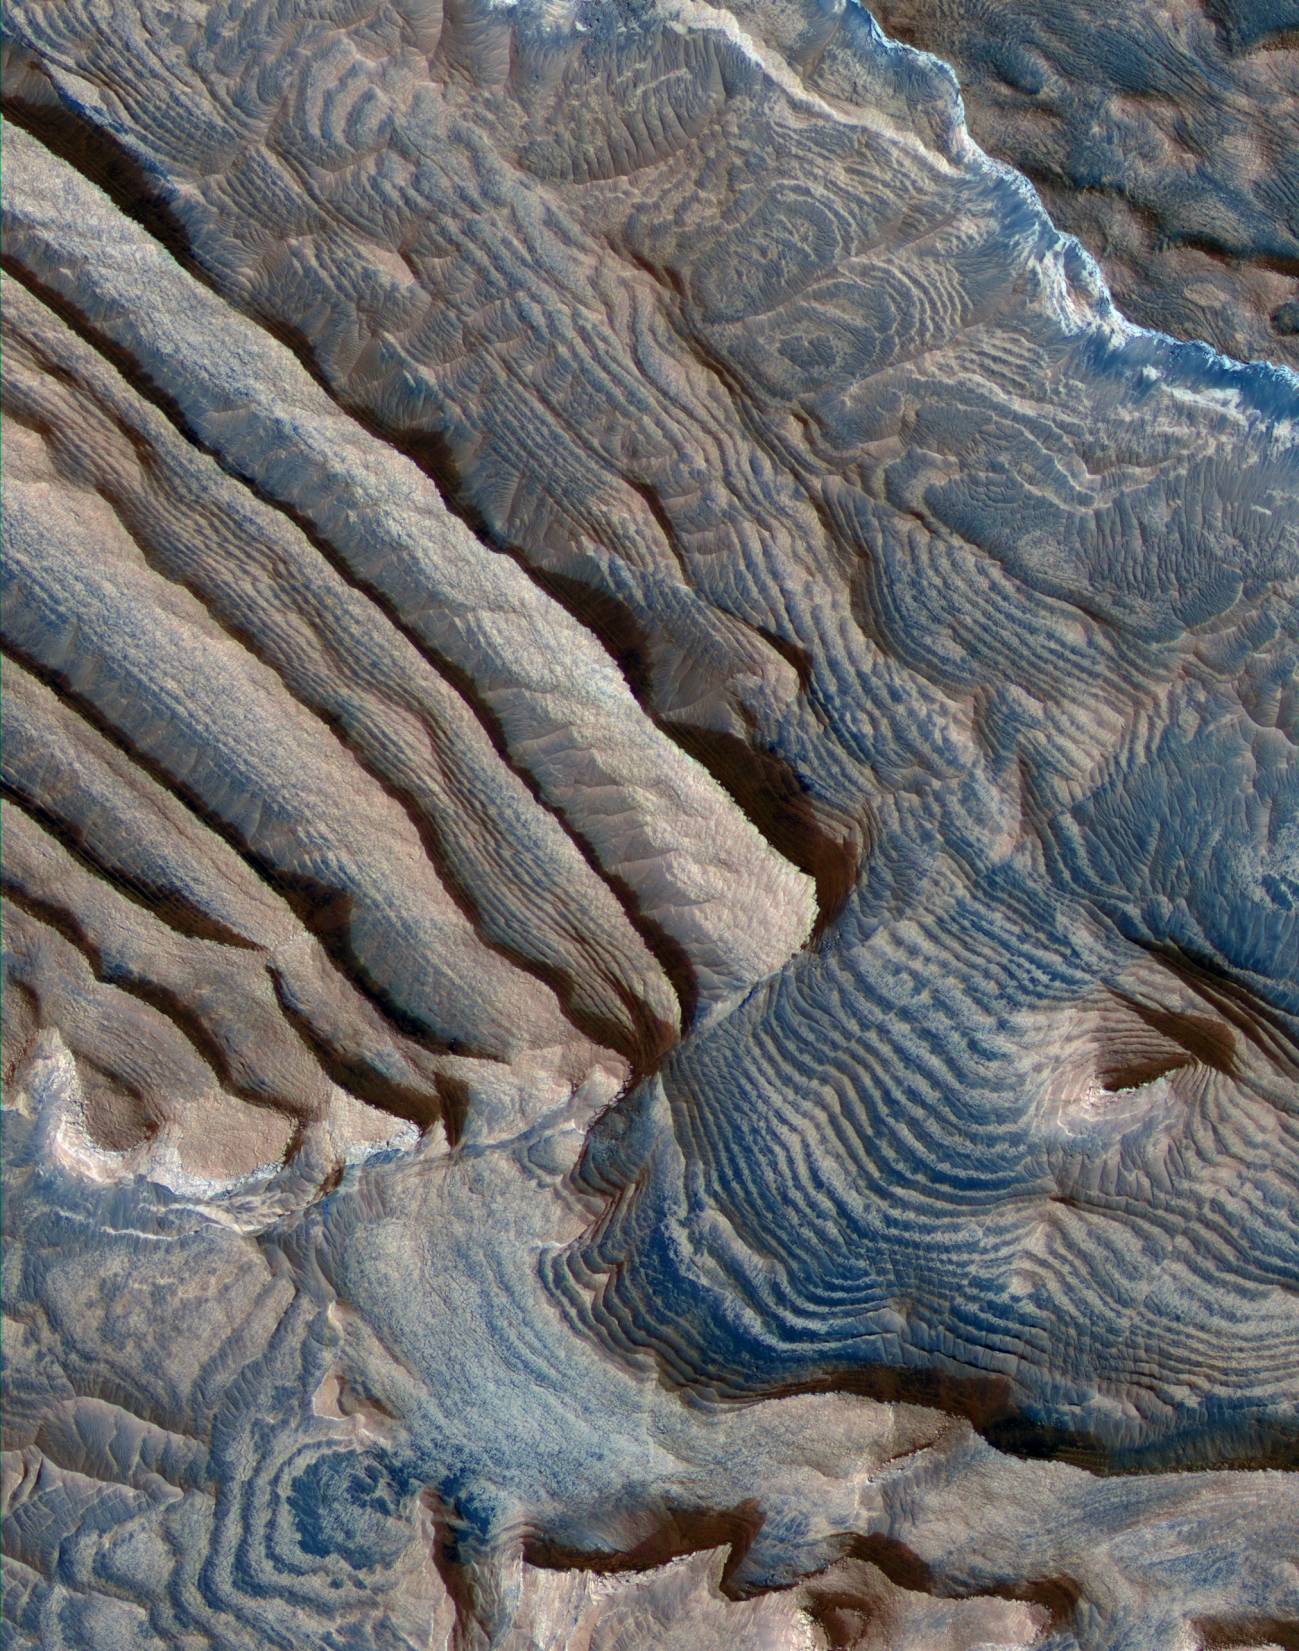 Nuevas imágenes de Marte en alta resolución